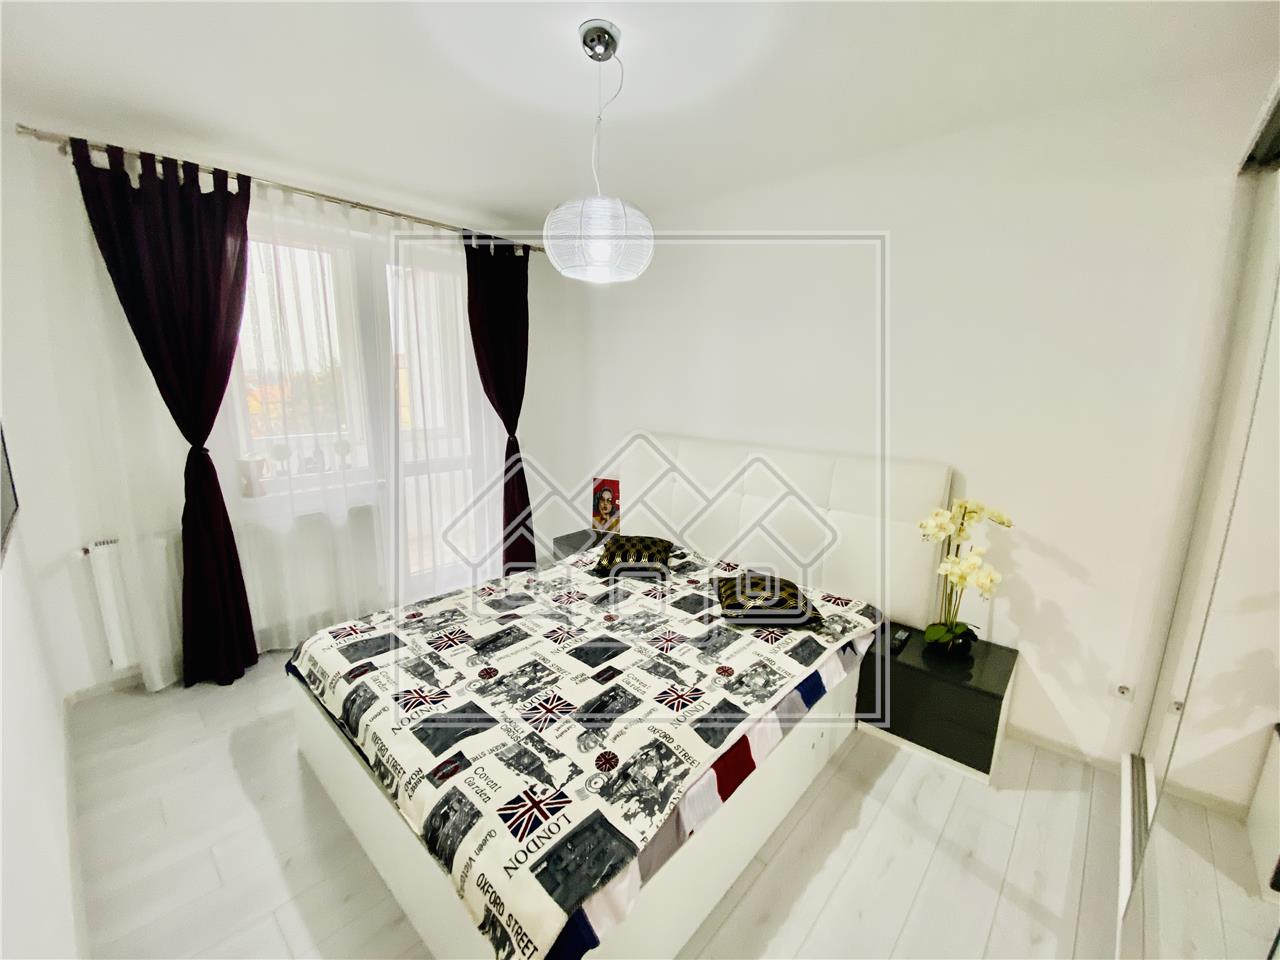 Wohnung zum Verkauf in Sibiu - 3 Zimmer und Balkon - Bereich Rahovei